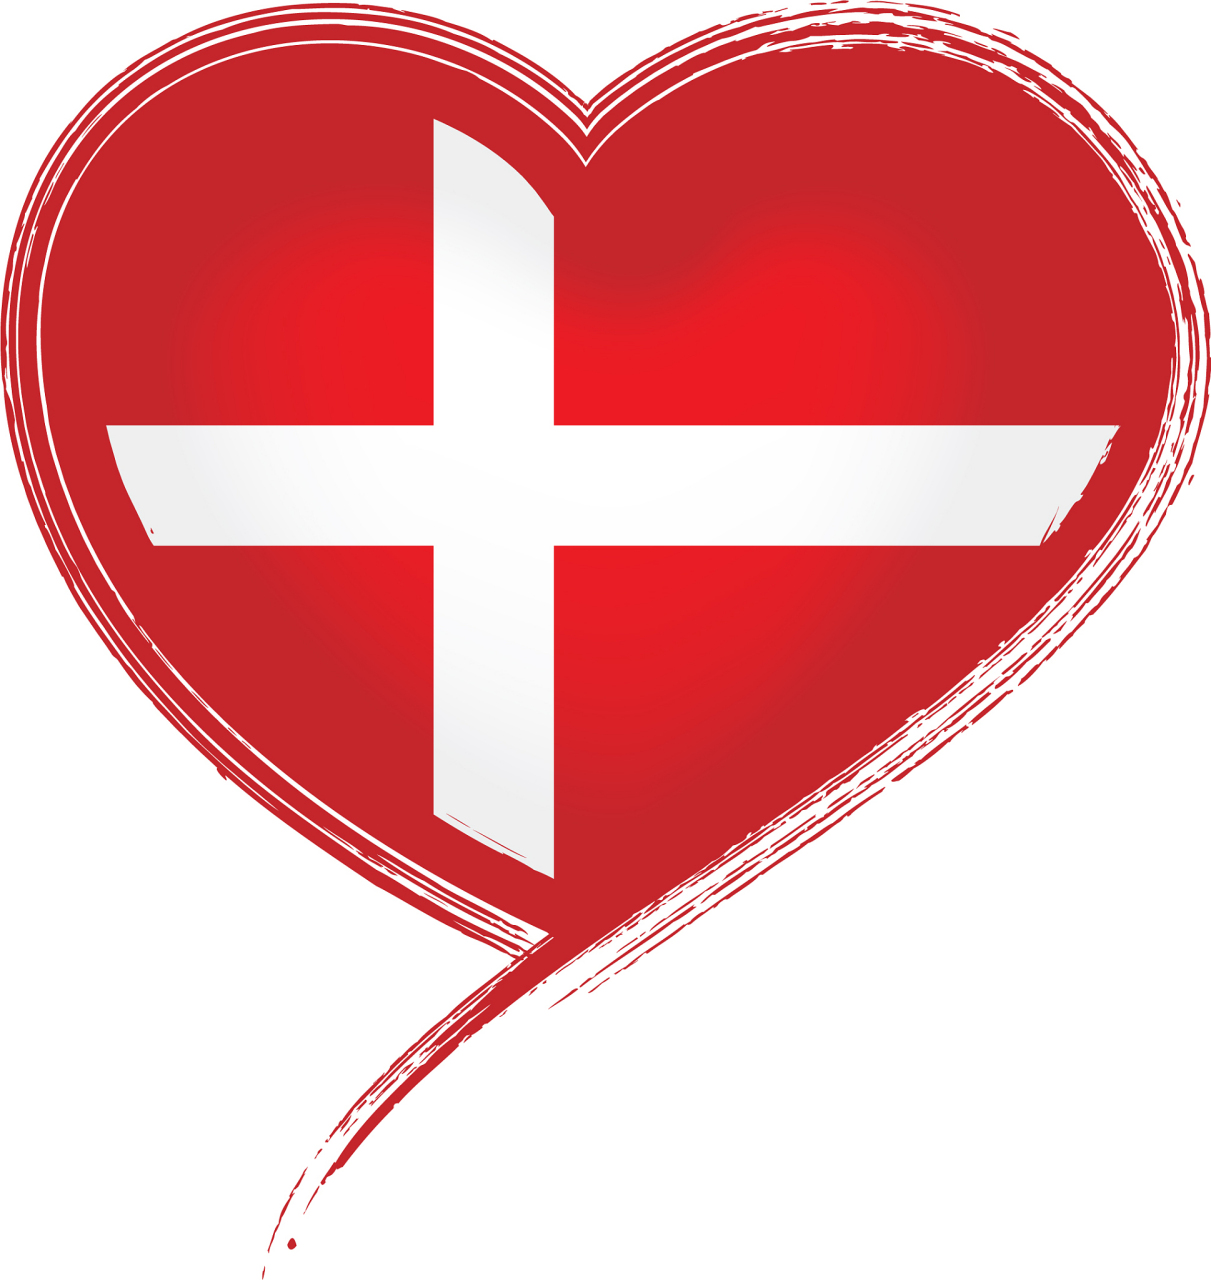 世界红十字会的标志图片